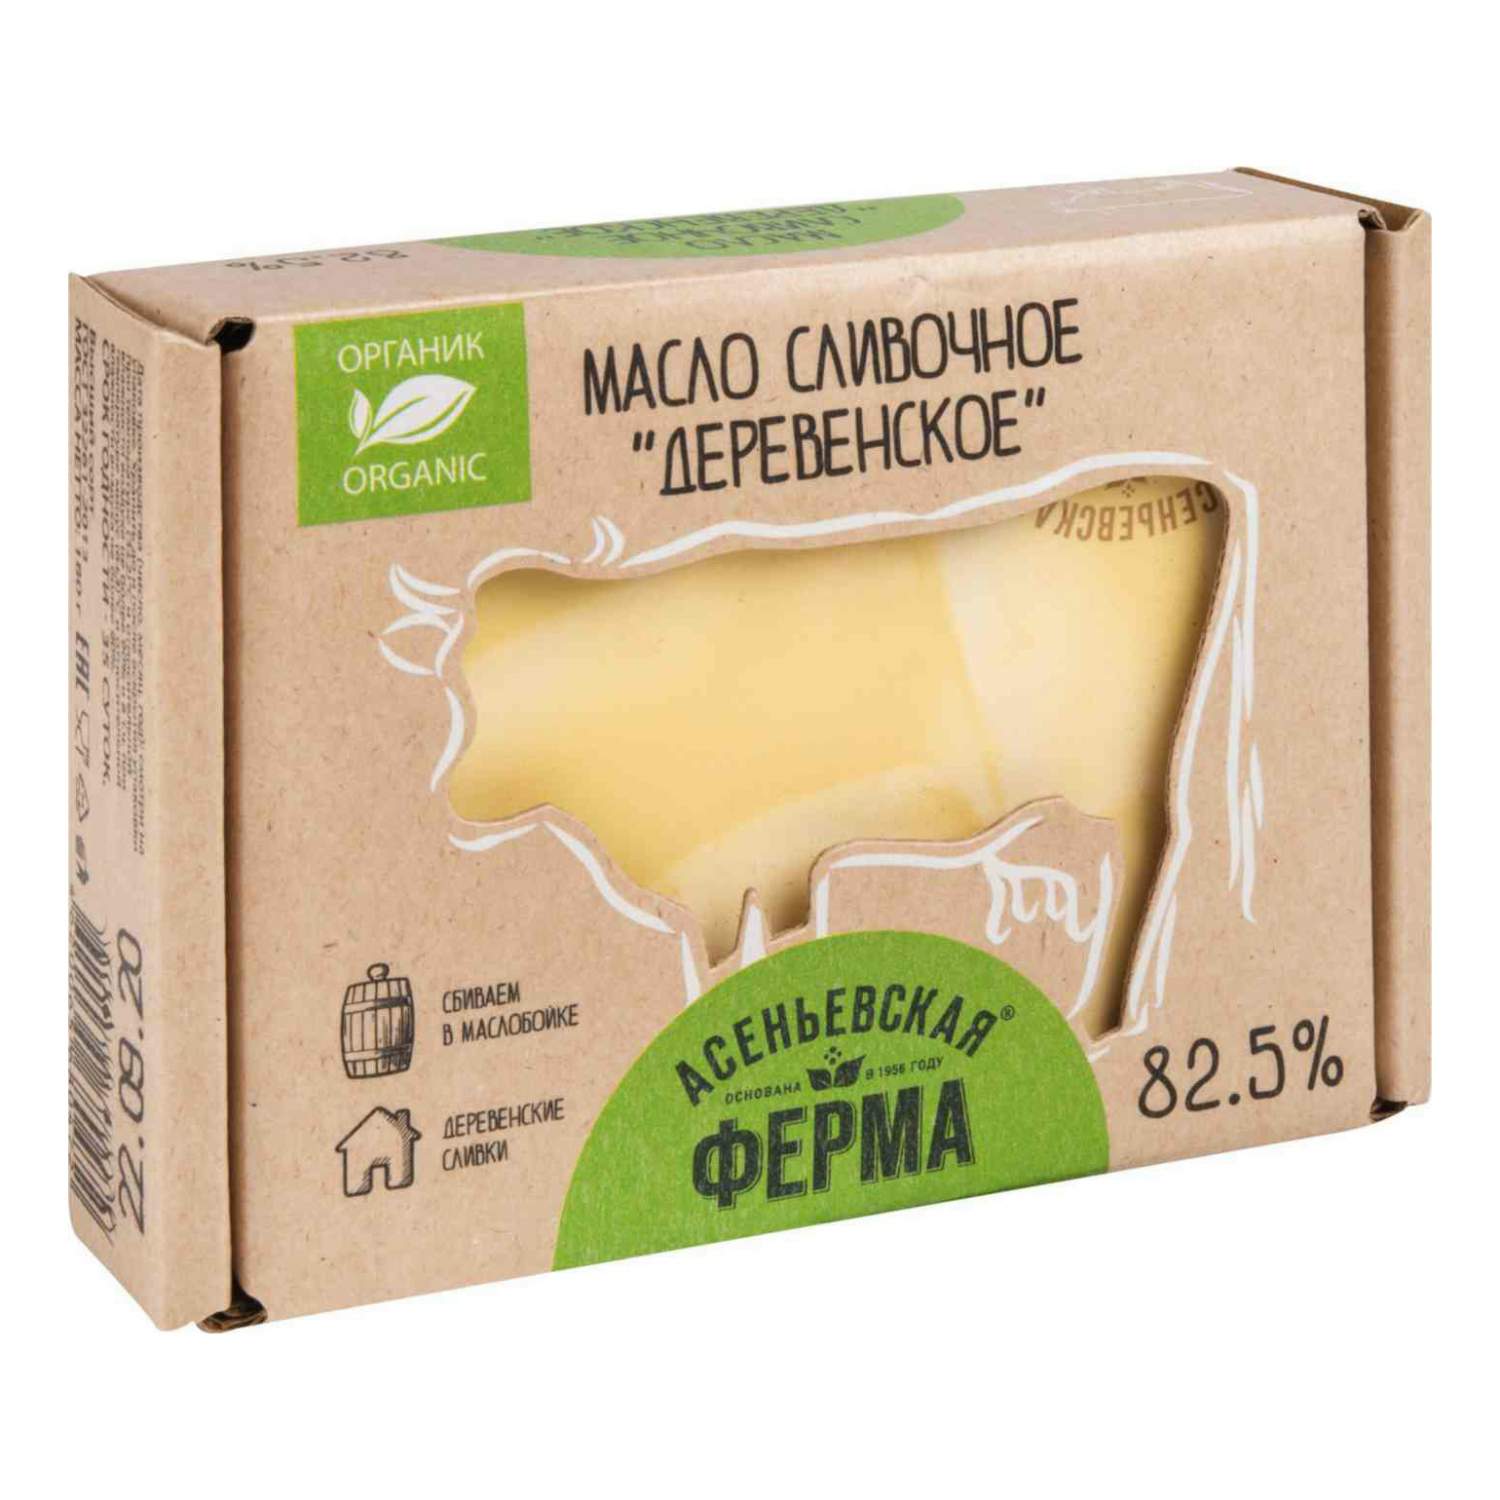 Ароматизатор Масло сладко-сливочное Деревенское 2400 для сгущенных молочных продуктов